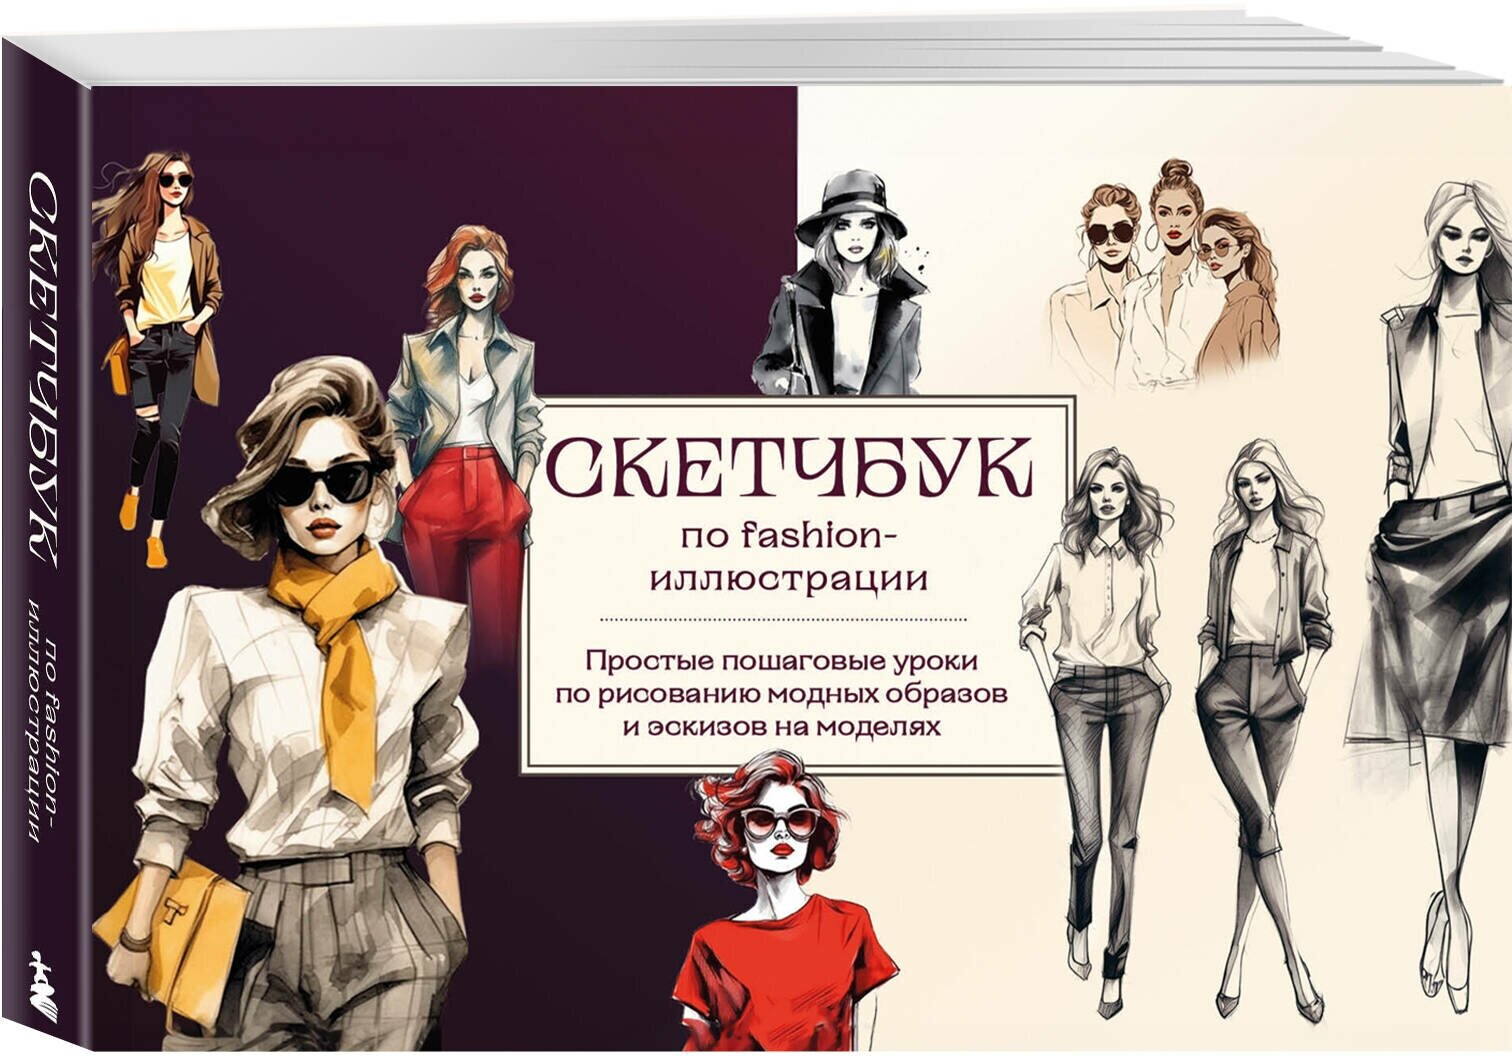 Николаева А. Н. Скетчбук по fashion-иллюстрации. Простые пошаговые уроки по рисованию модных образов и эскизов на моделях